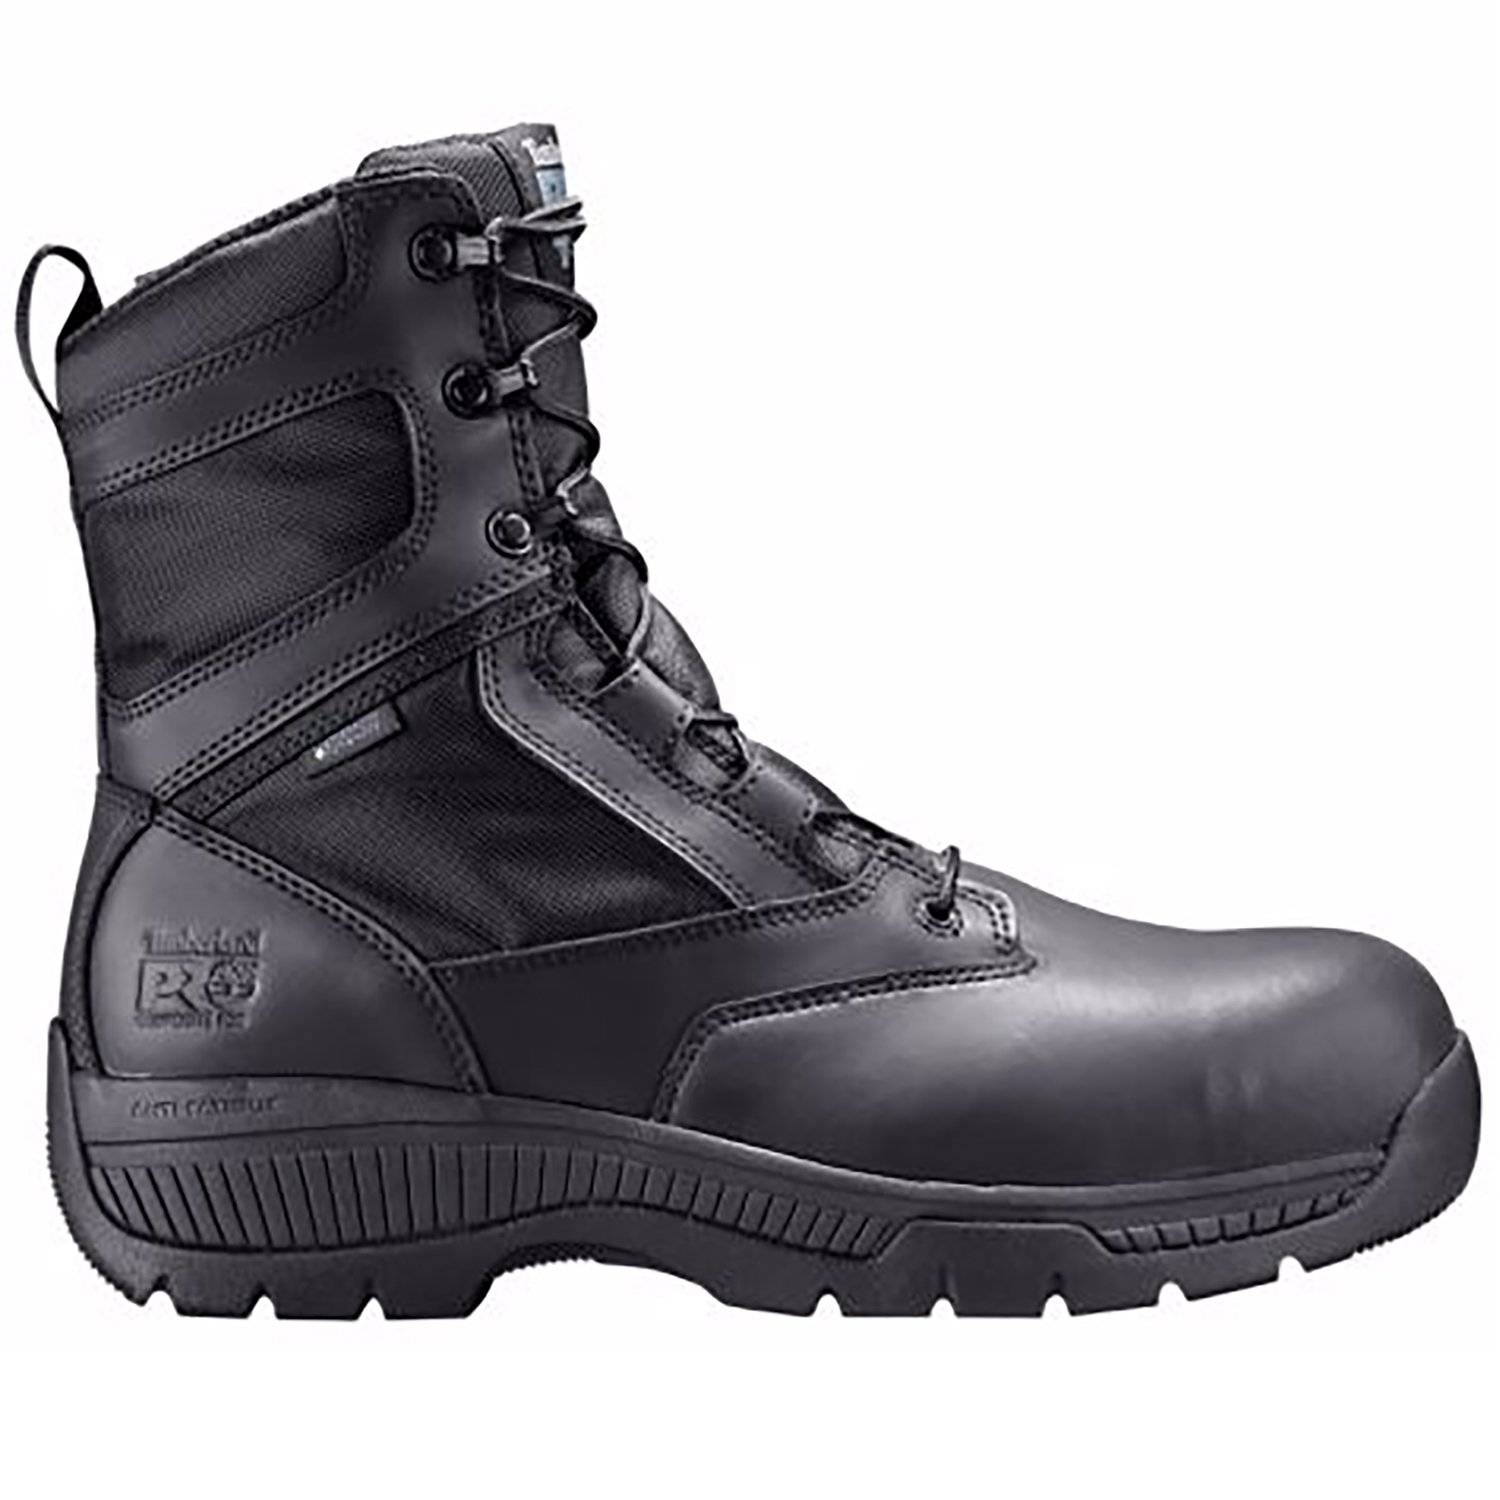 timberland pro duty boots